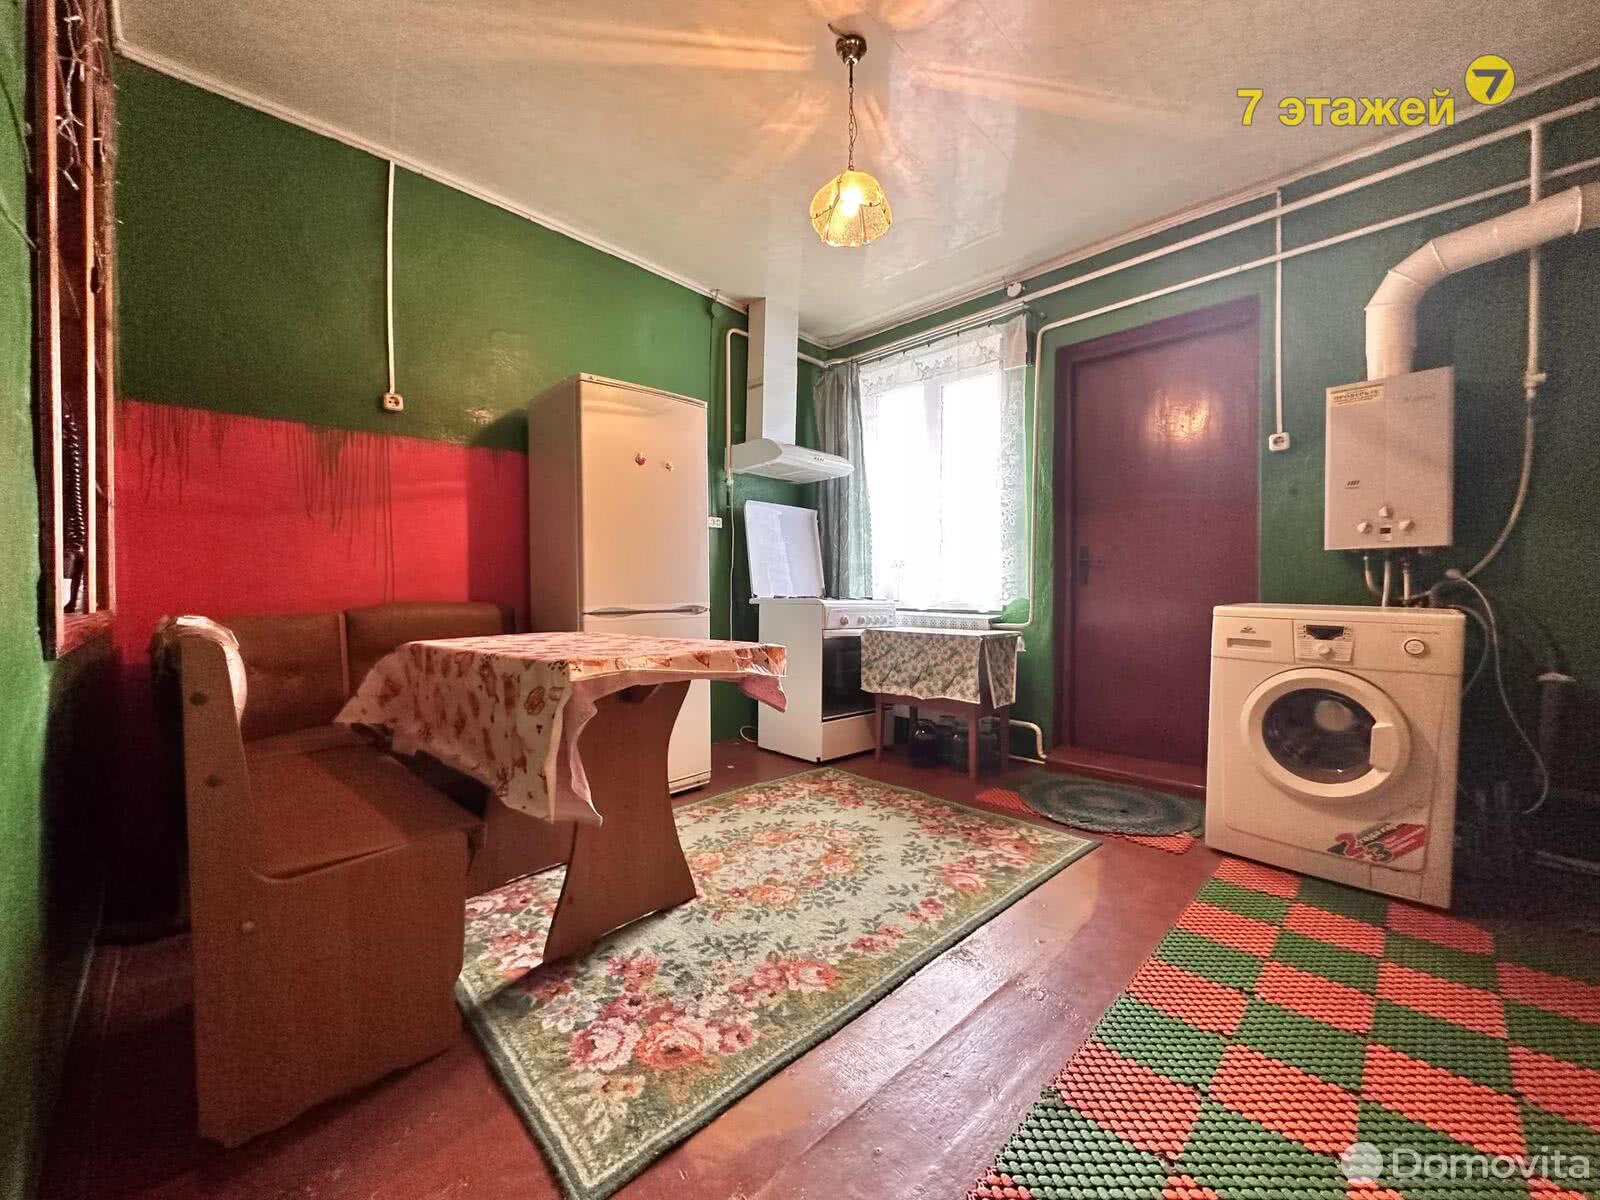 Купить комнату в Дзержинске, ул. Восточная, д. 1, цена 24000 USD - фото 3